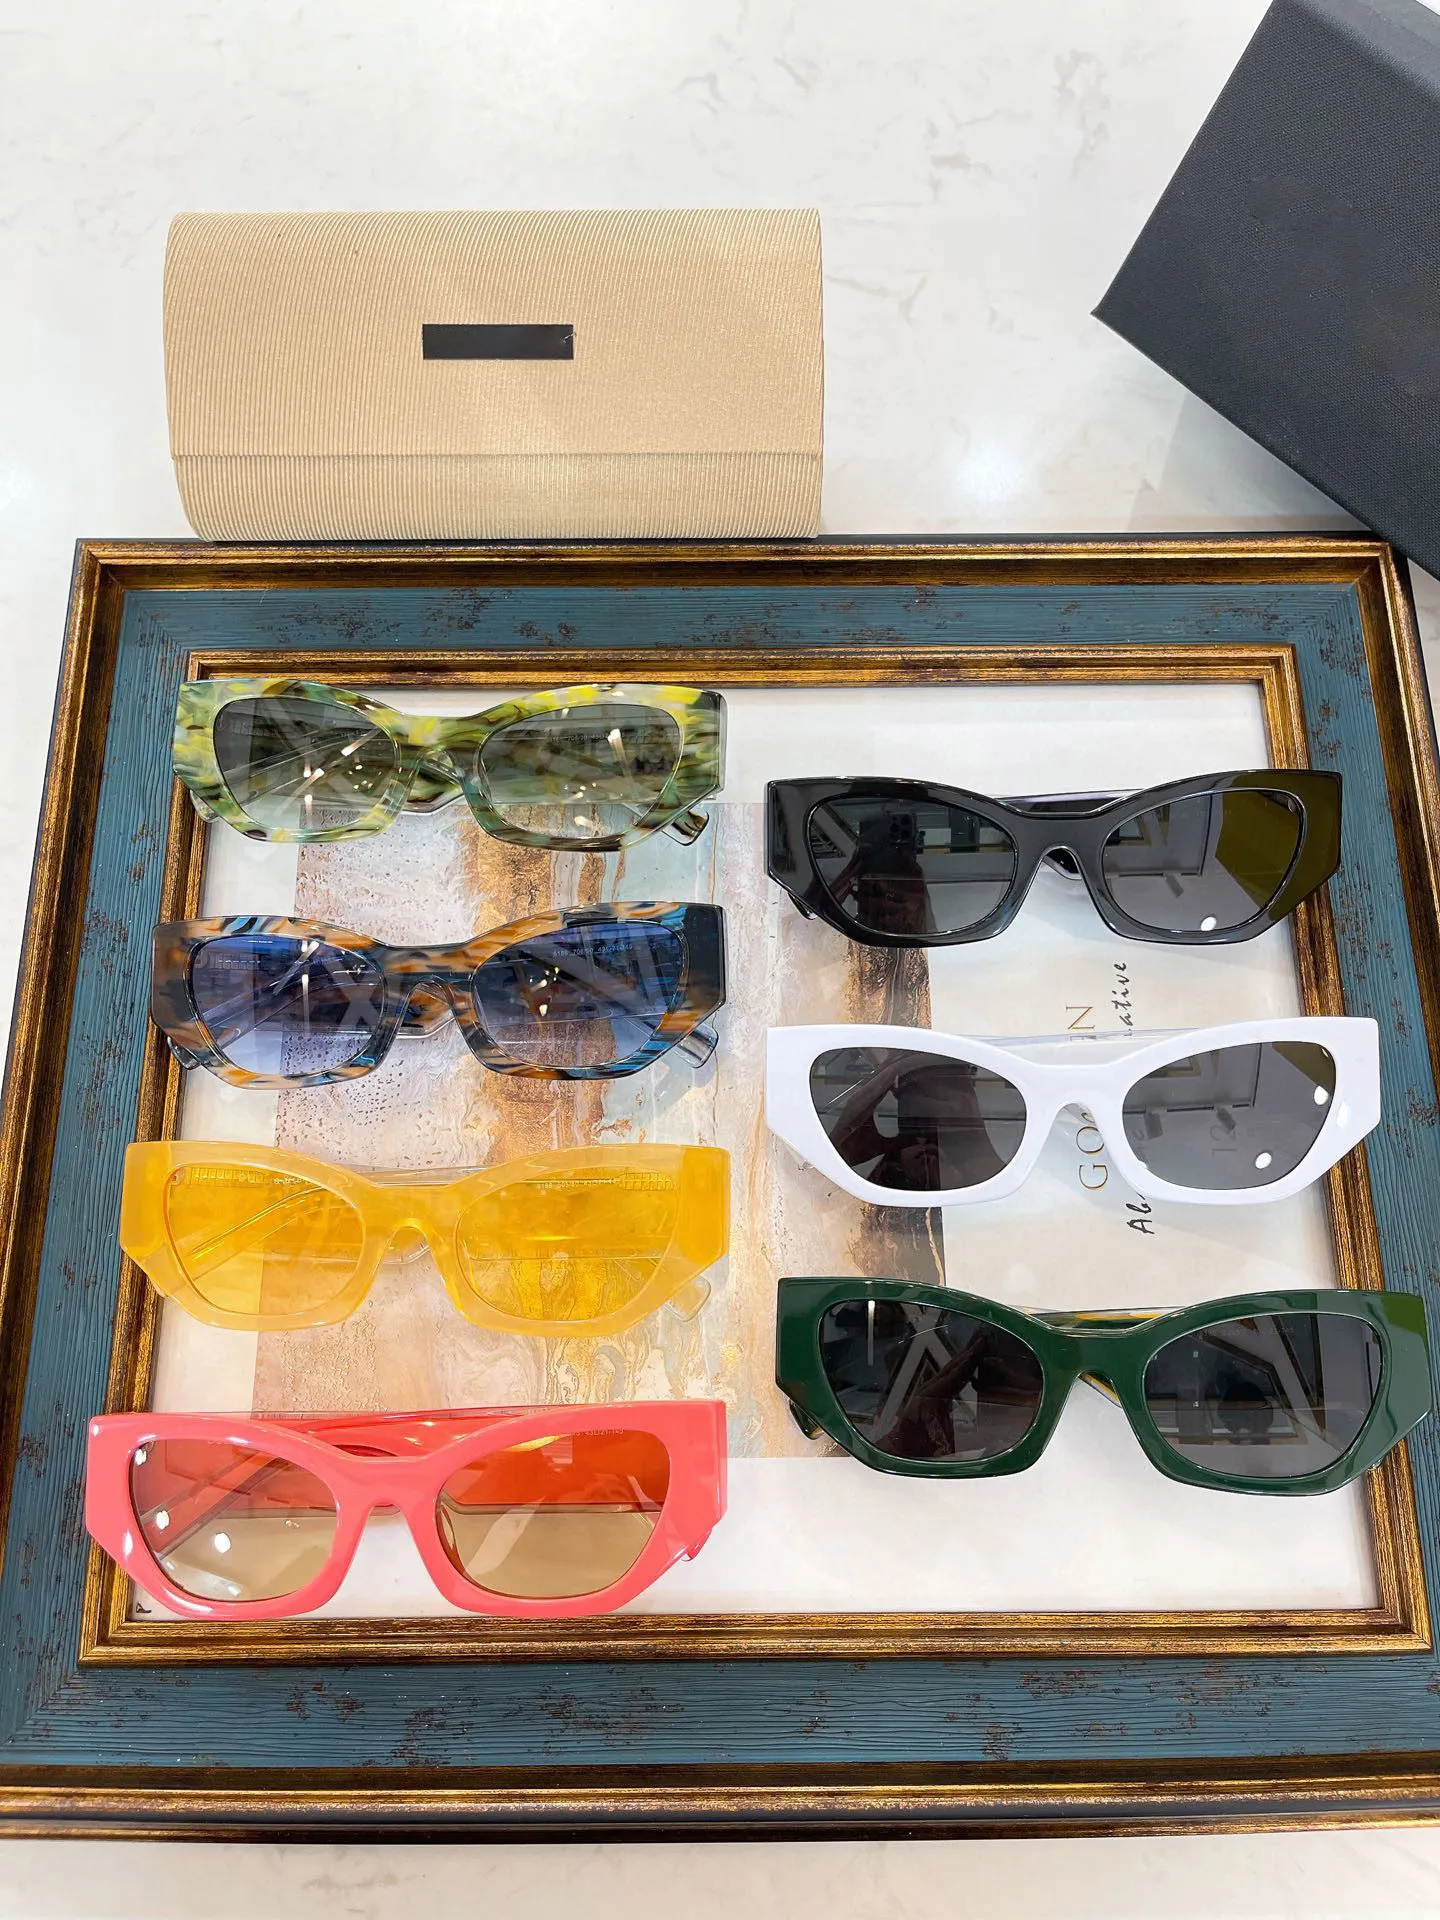 Mężczyźni okulary przeciwsłoneczne dla kobiet najnowsze sprzedaż mody okularów przeciwsłonecznych męskie okulary przeciwsłoneczne gafas de sol szklarki Uv400 obiektyw z losowo dopasowanym pudełkiem 6186